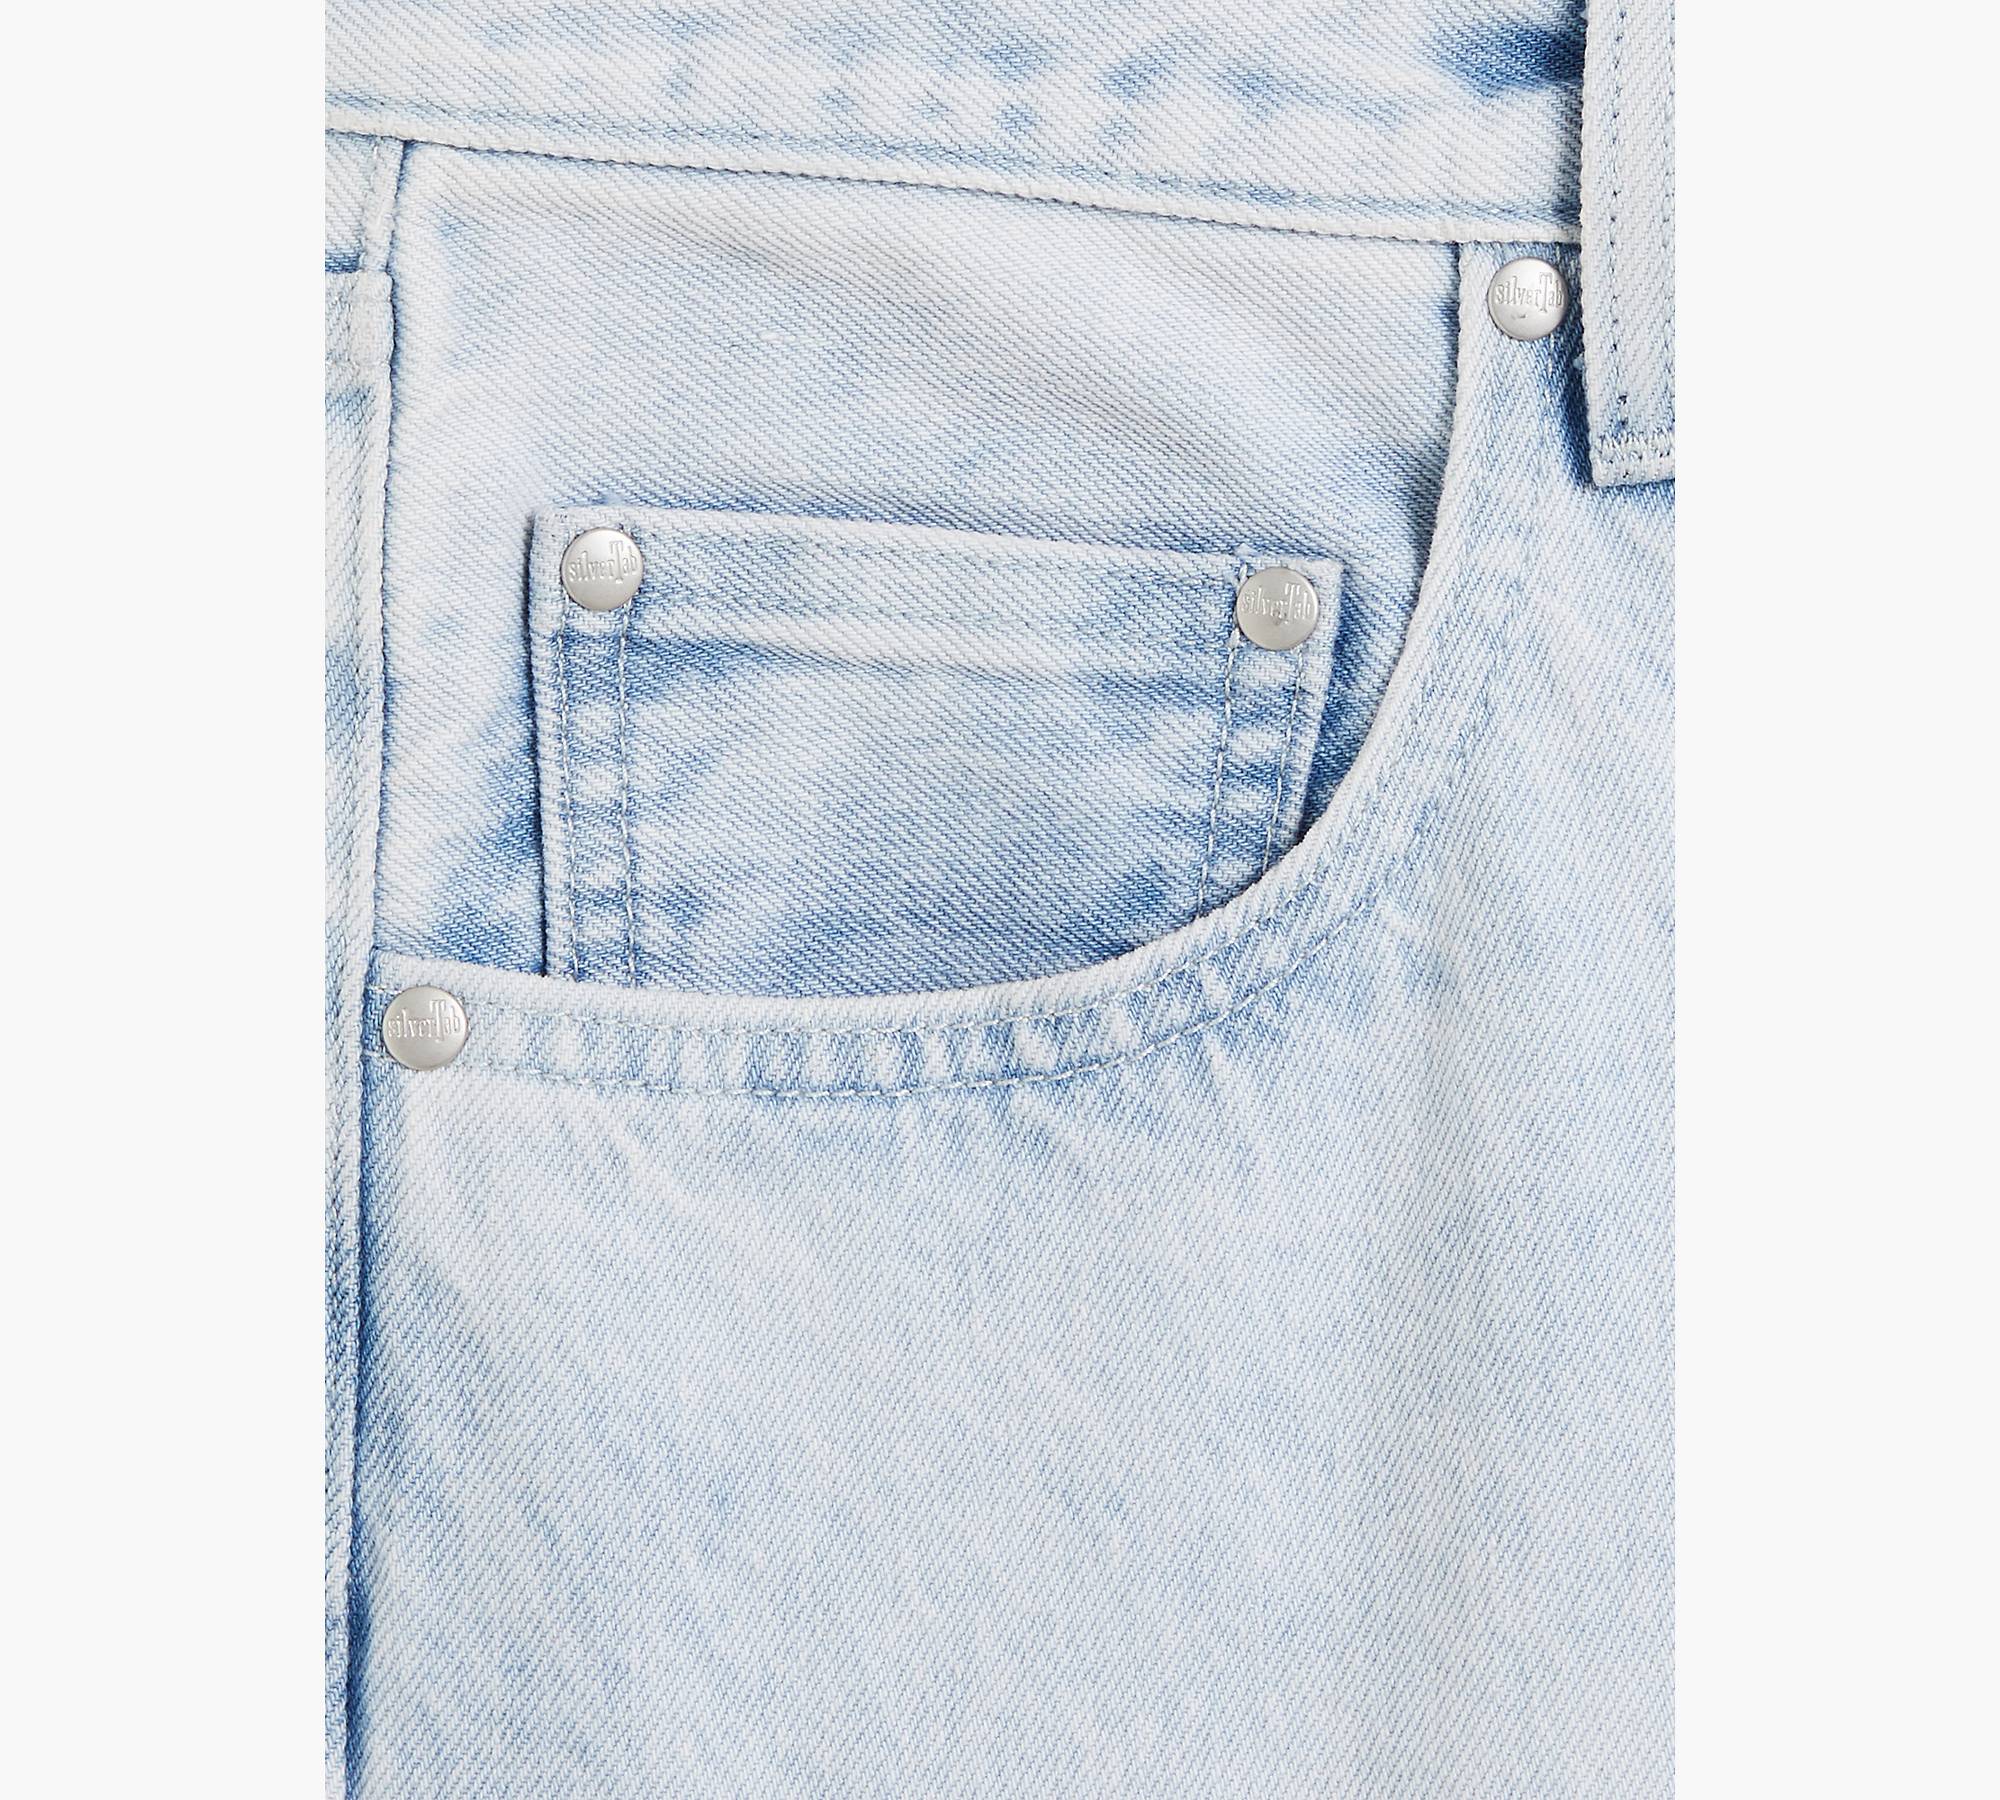 Loose Fit Men's Jeans - Light Wash | Levi's® US